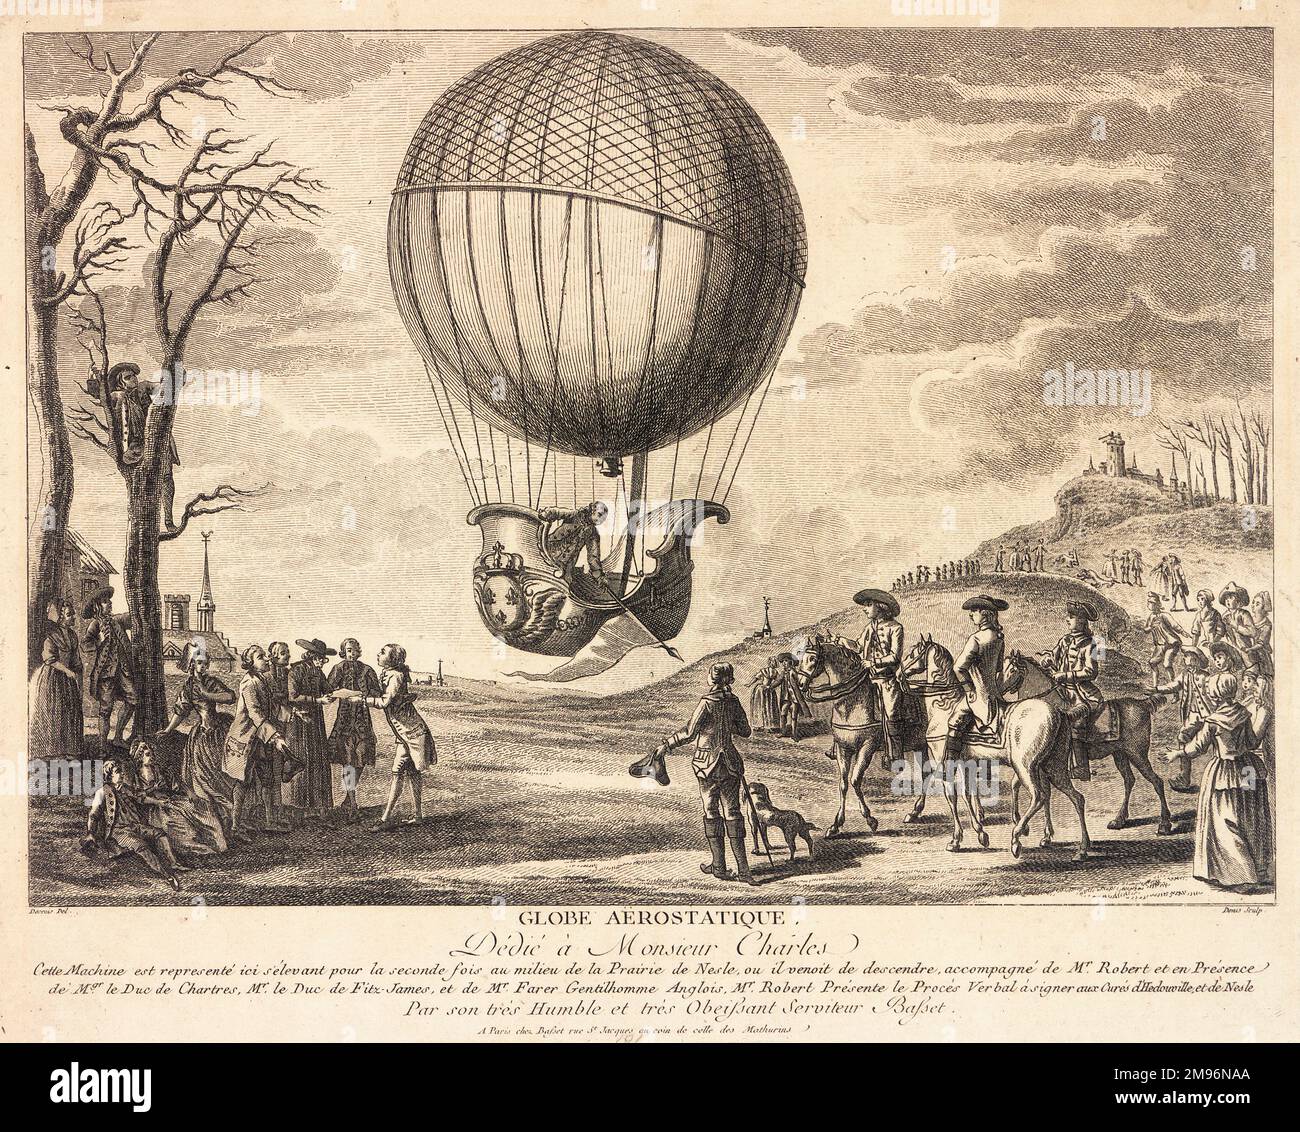 Ballonaufstieg von M Charles von der Prairie de Nesle, Nordfrankreich, wo er nach dem Start von den Tuilerien, Paris, am 1. Dezember 1783 gelandet war. Ich sah hier zum zweiten Mal aufsteigen. M. Robert, der Charles von Paris aus begleitete, kann am Boden (links) gesehen werden und Zeugenaussagen machen. Es war der erste Wasserstoffballonflug. Stockfoto